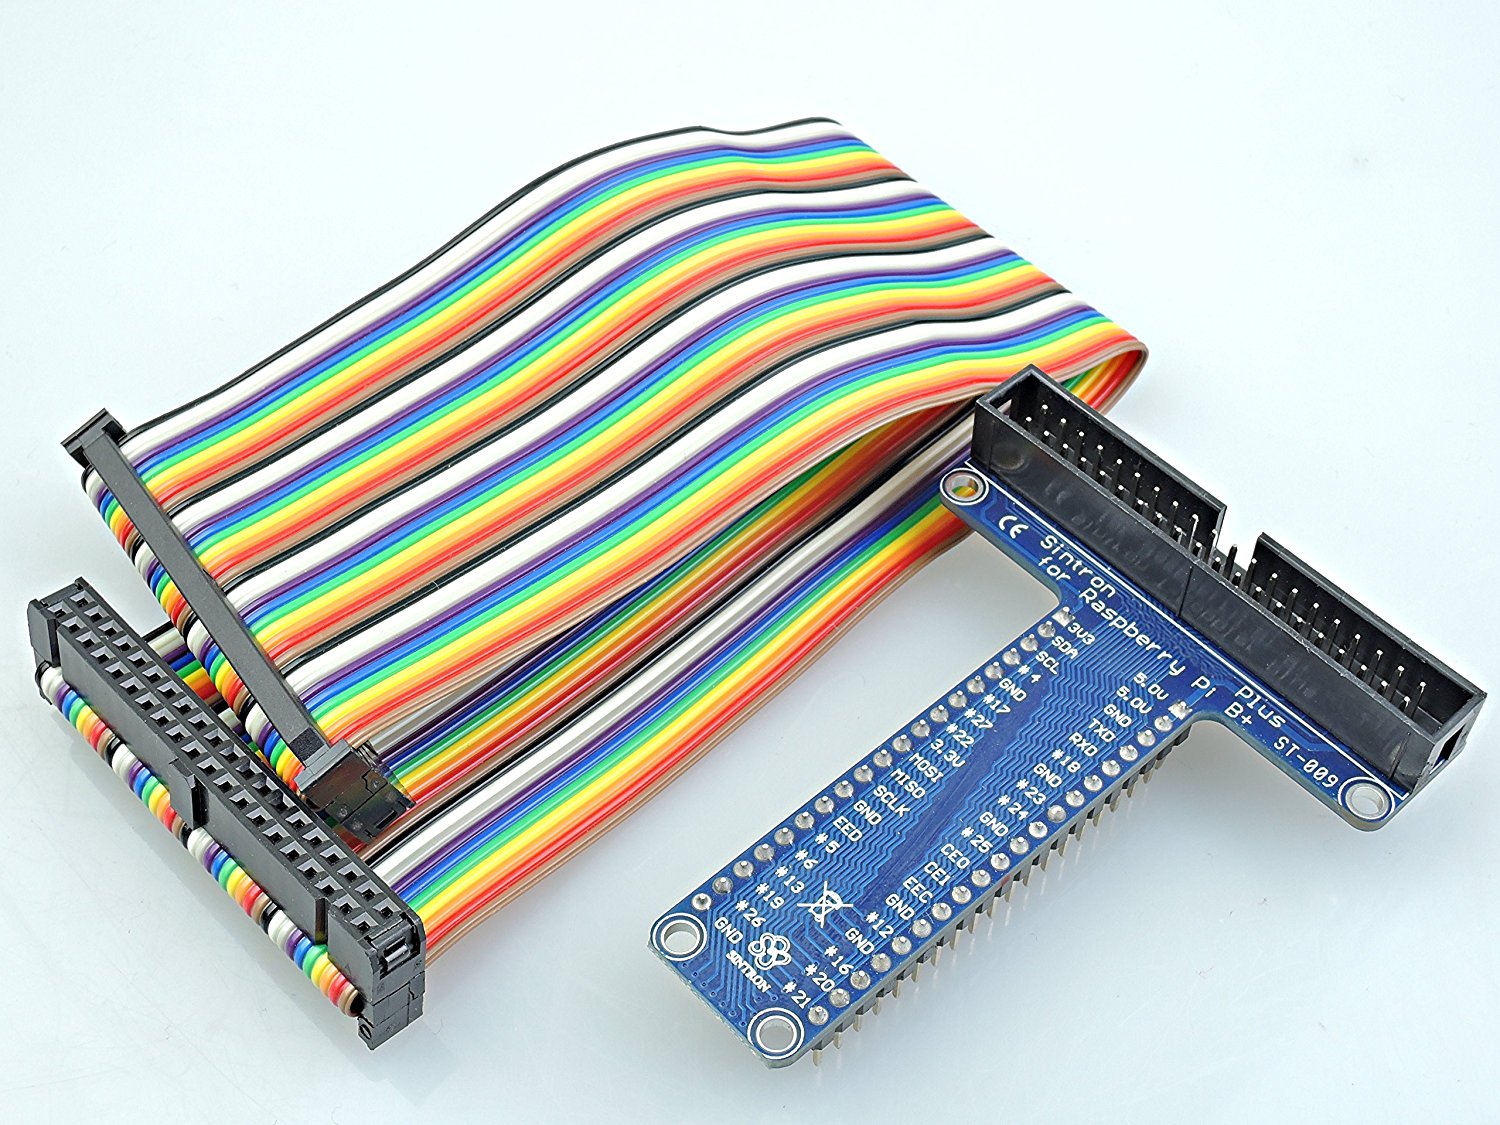 T/U GPIO Extension Board +40Pin Rainbow Cable (+Breadboard) Raspberry Pi  Pi2 B+